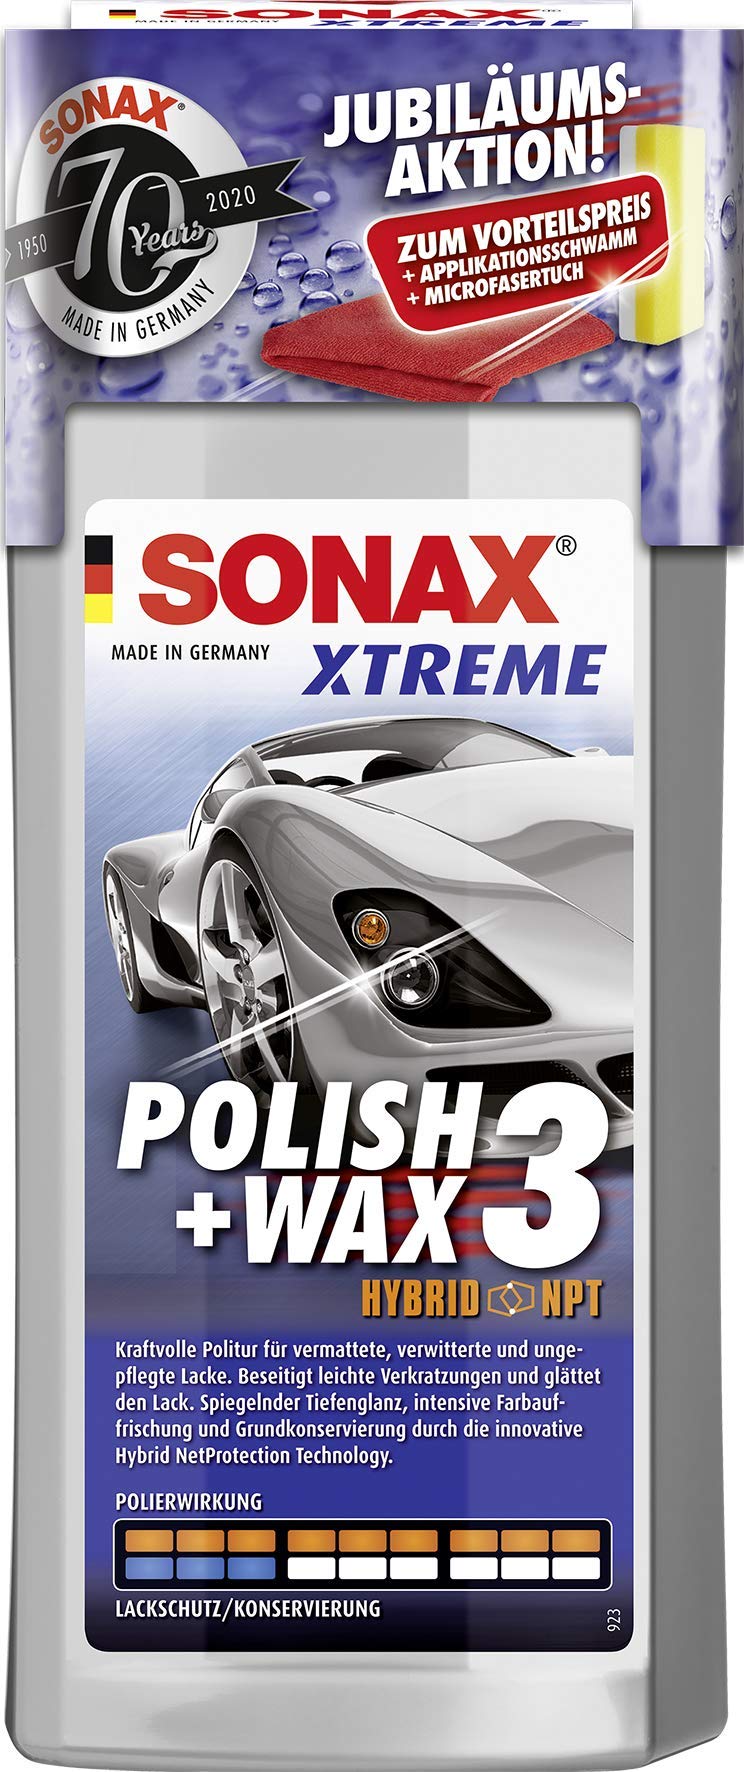 SONAX XTREME Polish+Wax 3 AktionsSet 70 Jahre (500 ml) zum Abtragen verwitterter Lackschichten und Auffrischen matter Farben inkl. gratis Applikationsschwamm und Mikrofasertuch | Art-Nr. 02028410 von SONAX